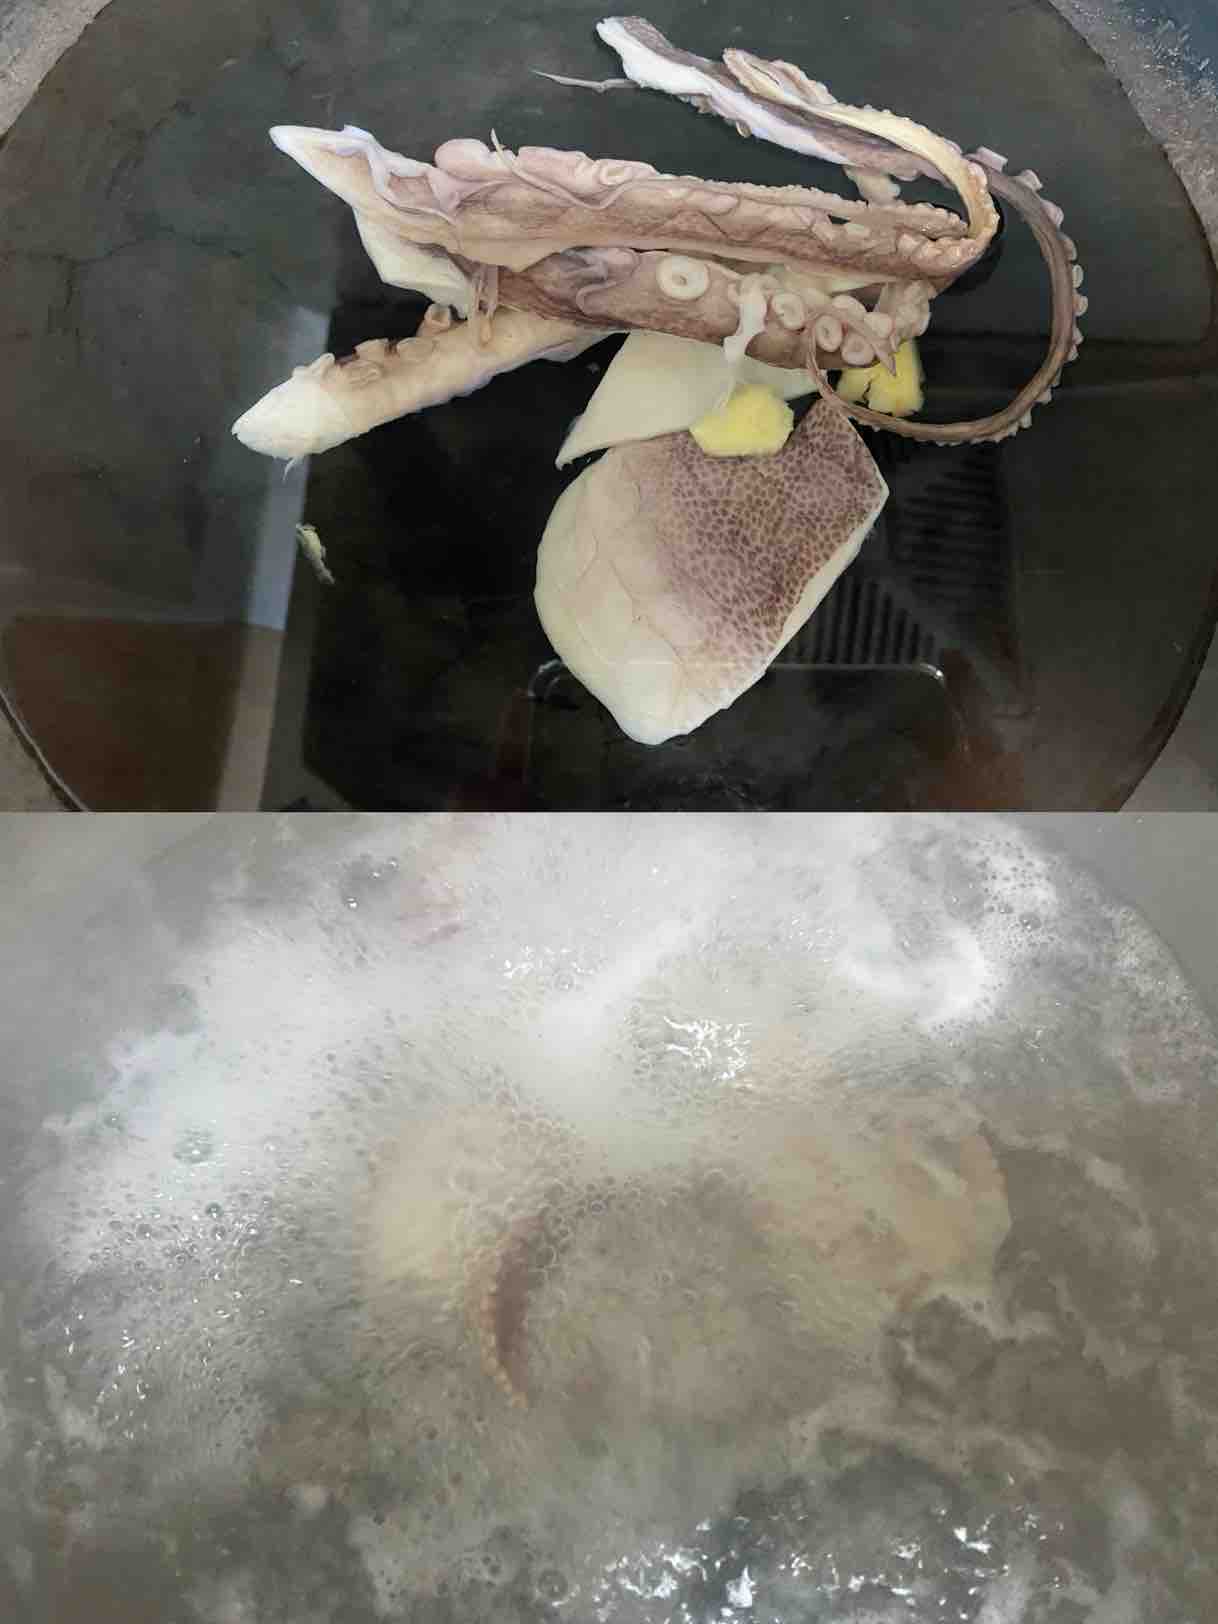 Octopus Keel Pot Squash recipe